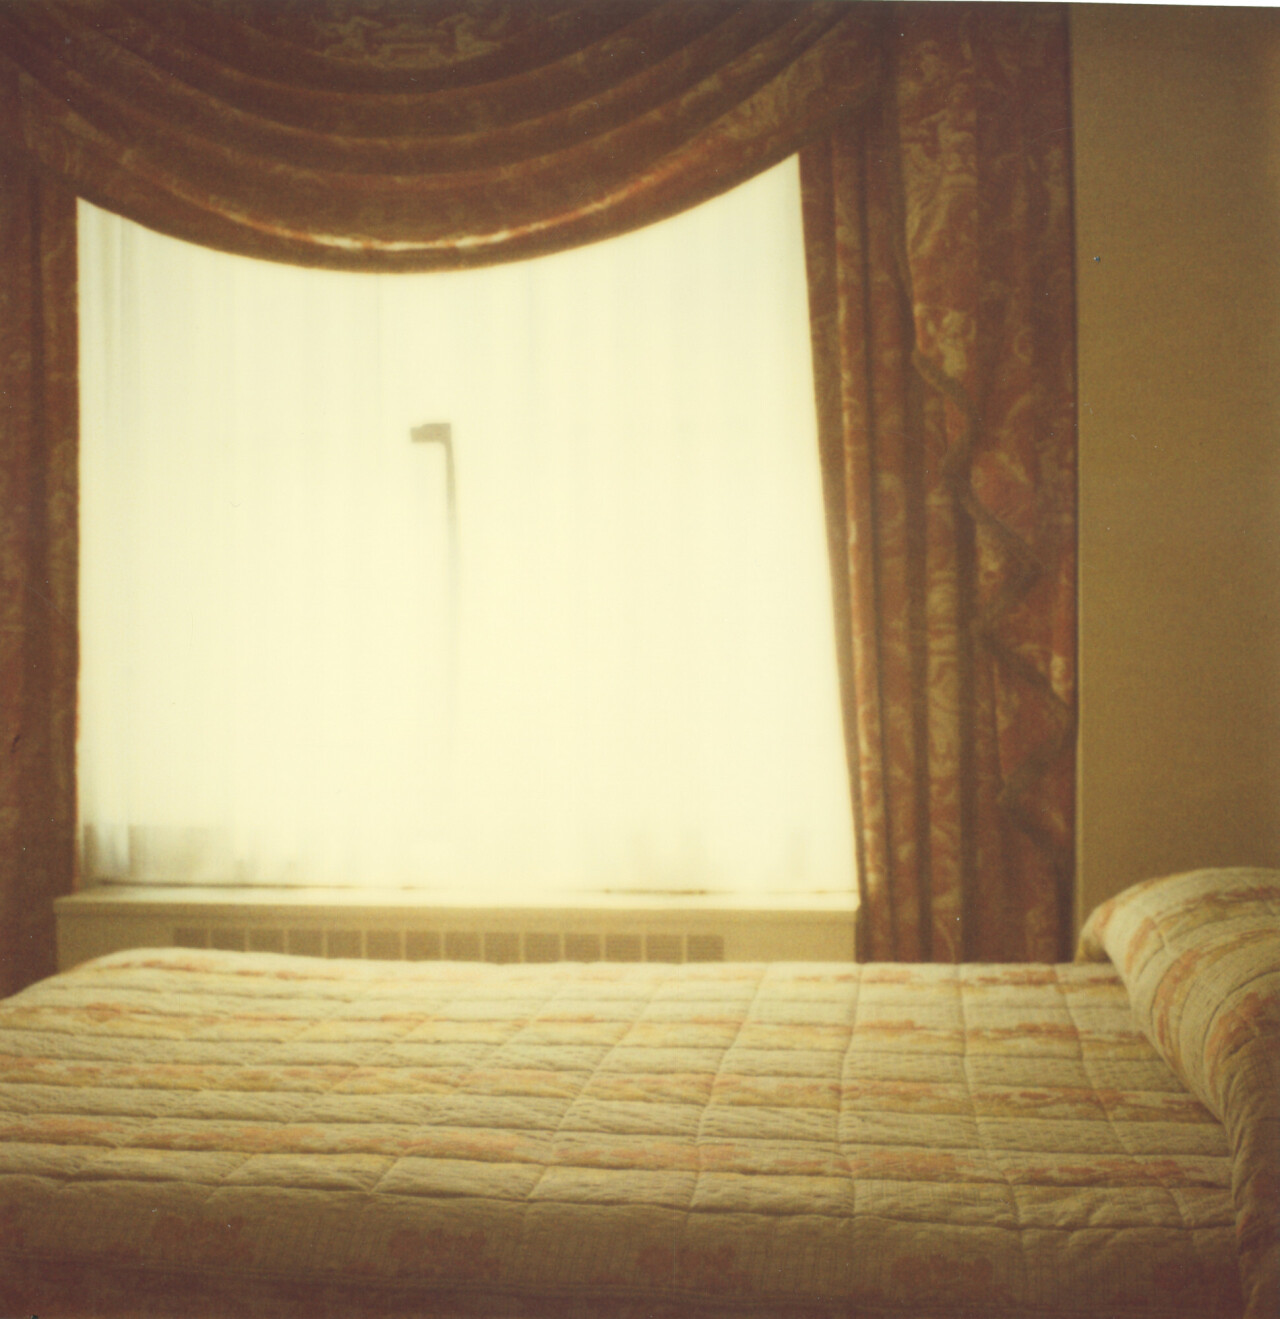 Комната № 503, II (Странная любовь), 2005 г., полароид. Фотограф Стефани Шнайдер